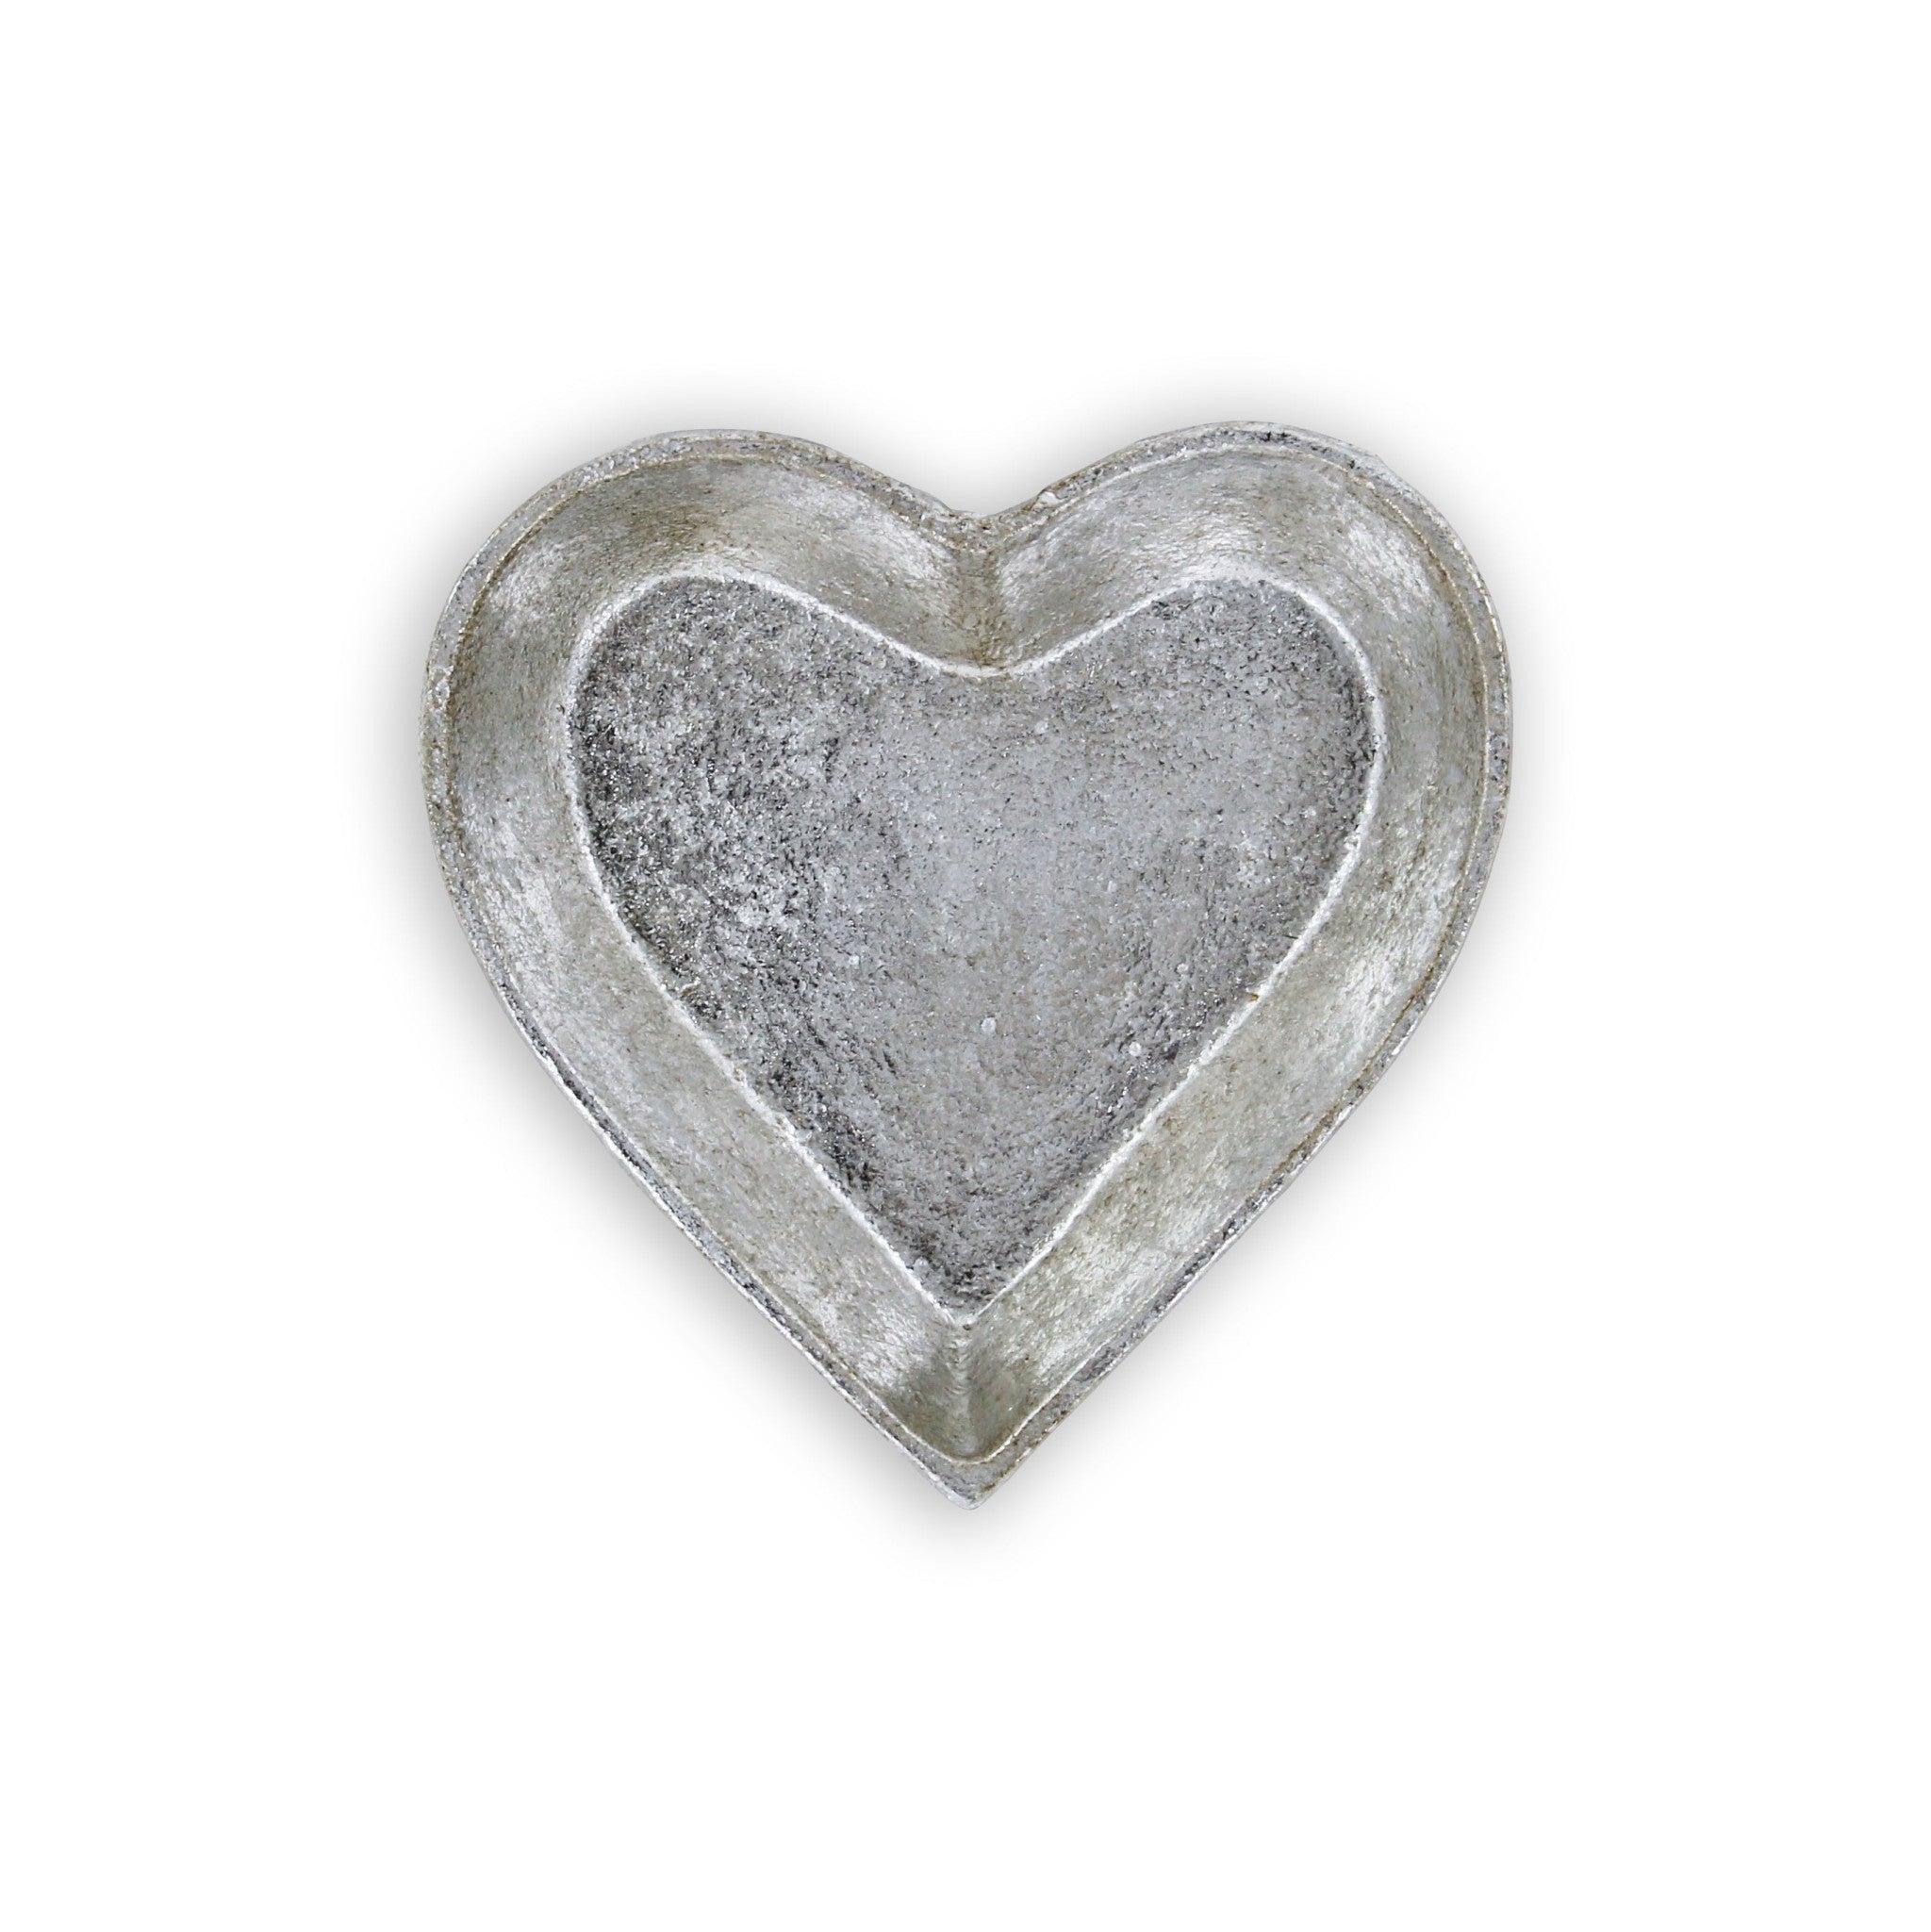 7" Silver Heart Cast Iron Handmade Vanity Tray